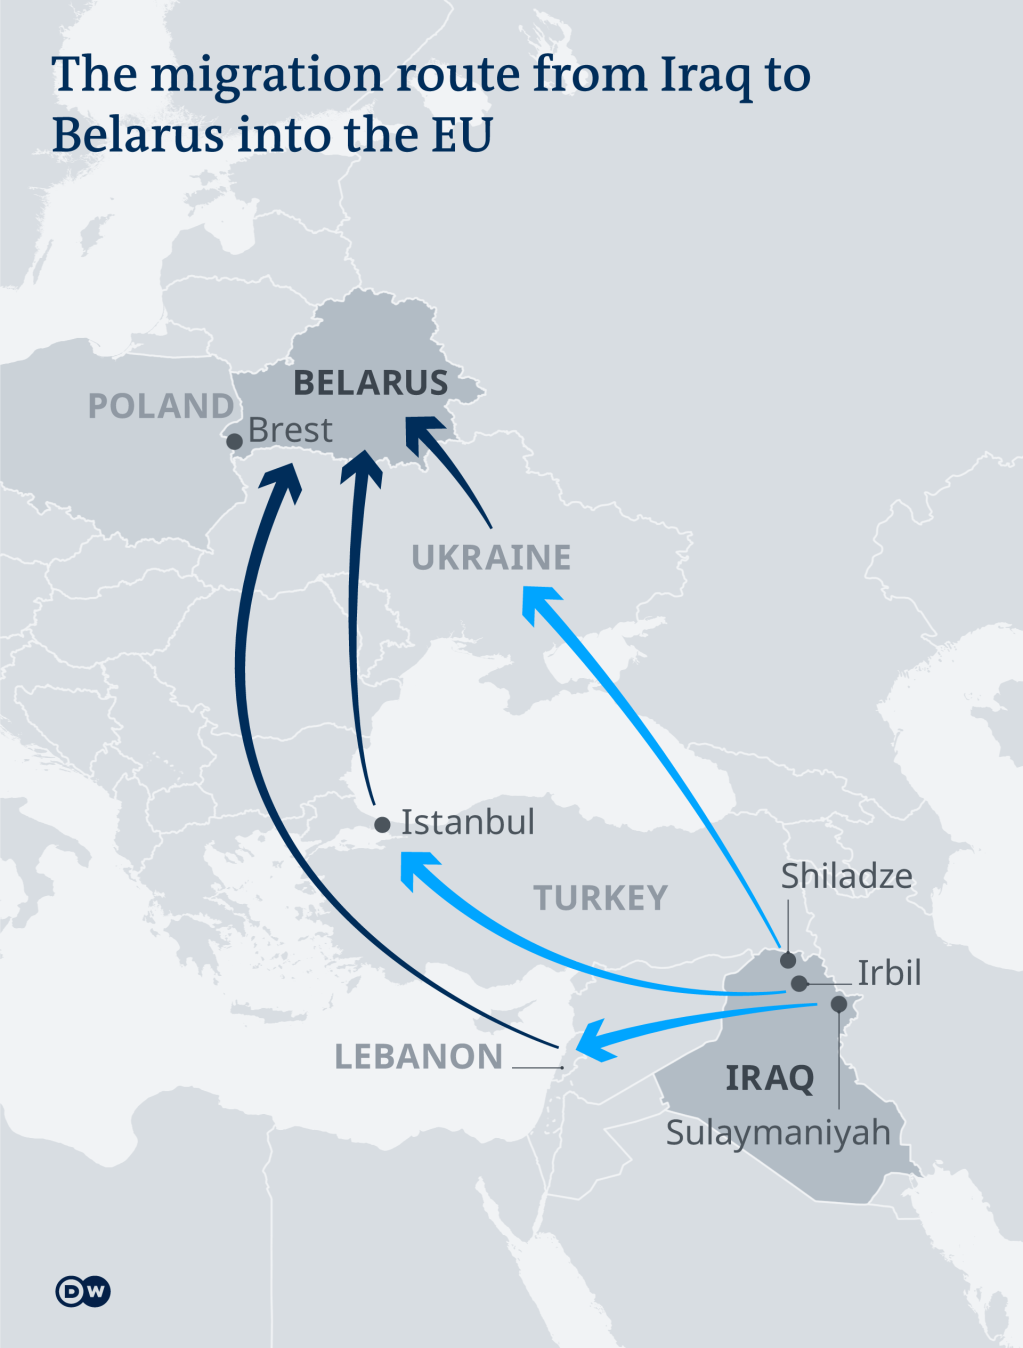 بعض المطارات التي استخدمها المهاجرون للوصول إلى بيلاروسيا على أمل دخول الاتحاد الأوروبي